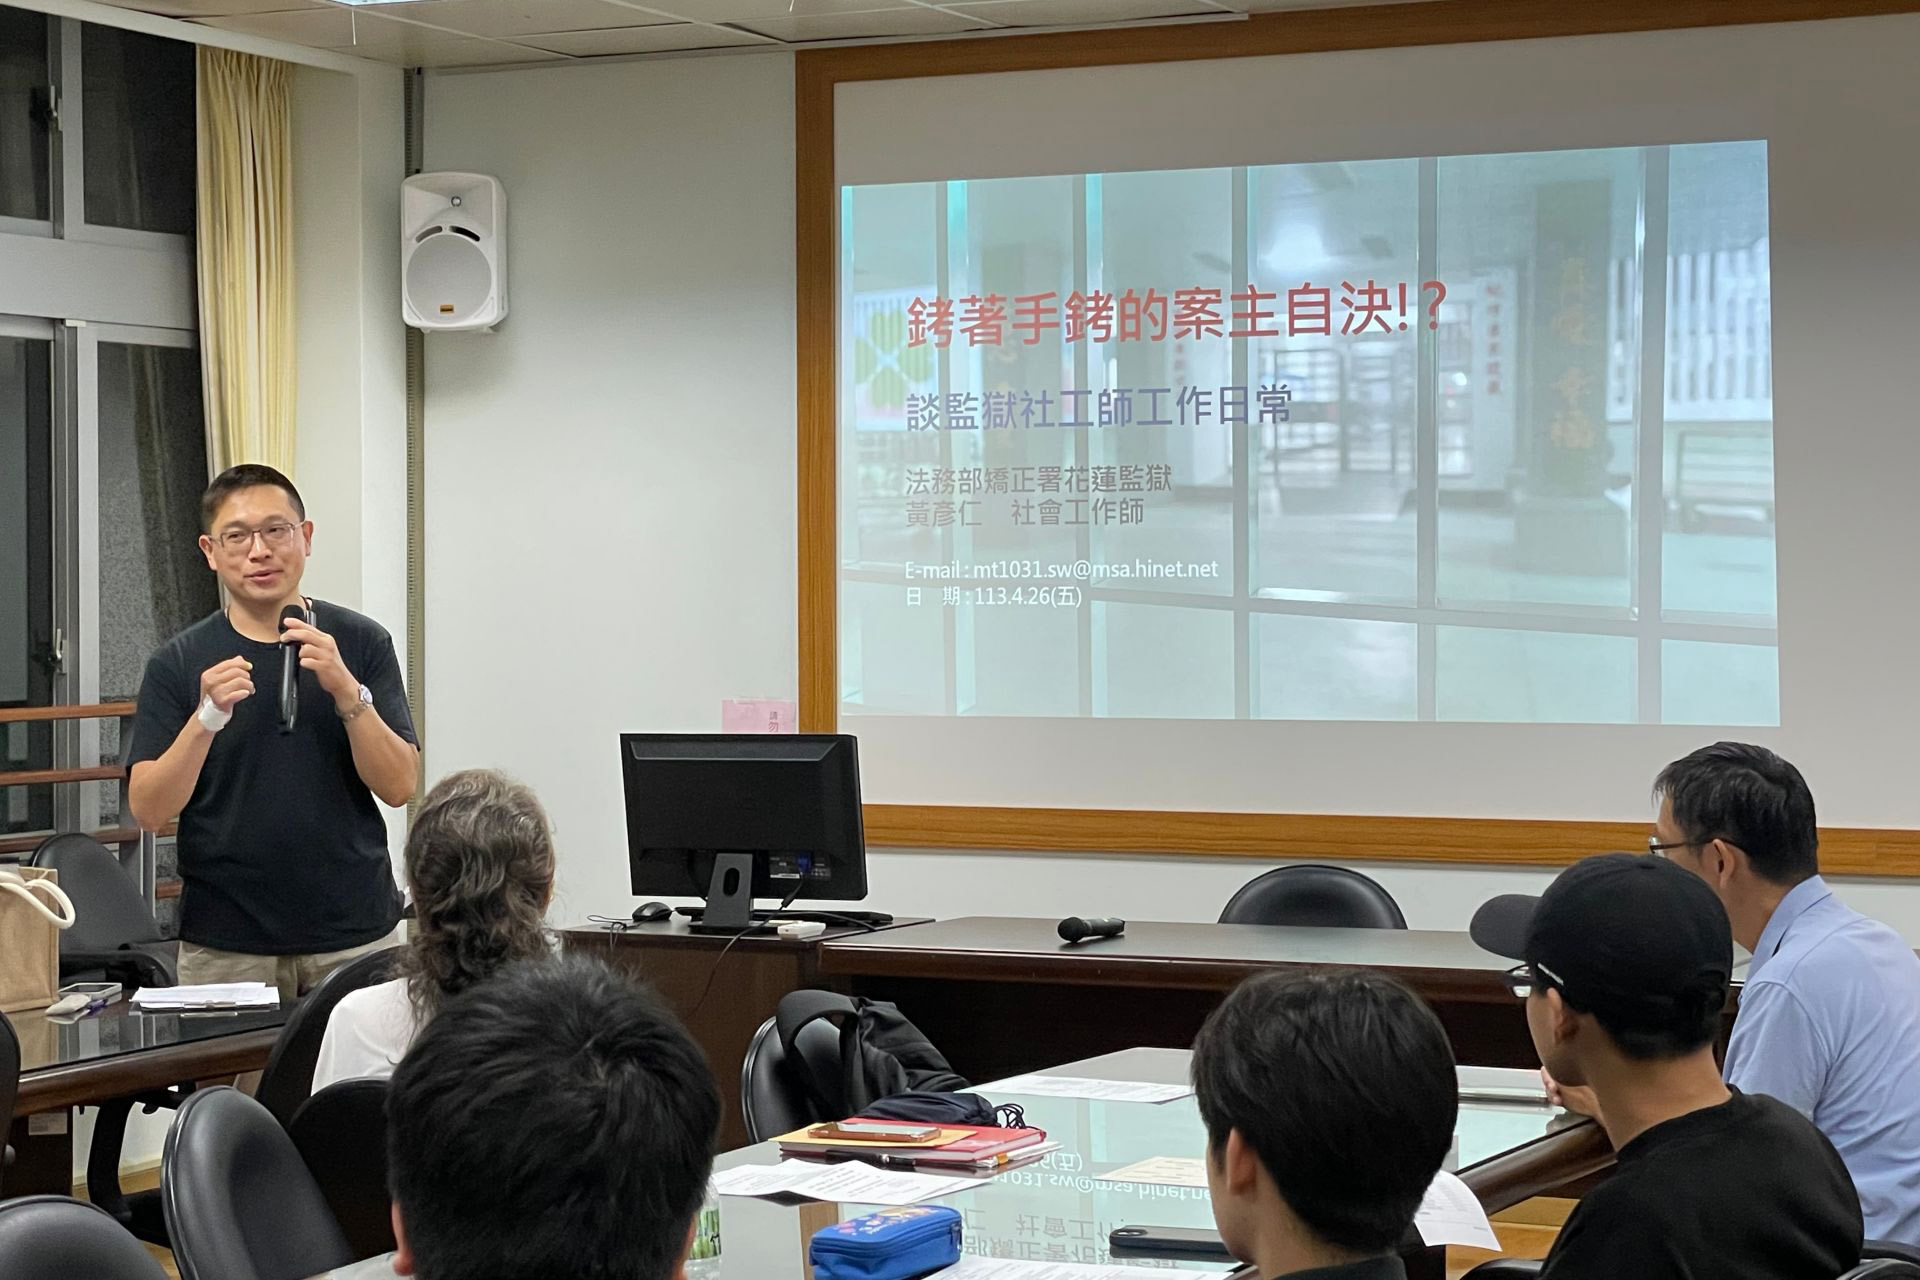 黃彥仁社工師 分享在監獄擔任社工師的實務經驗與反思